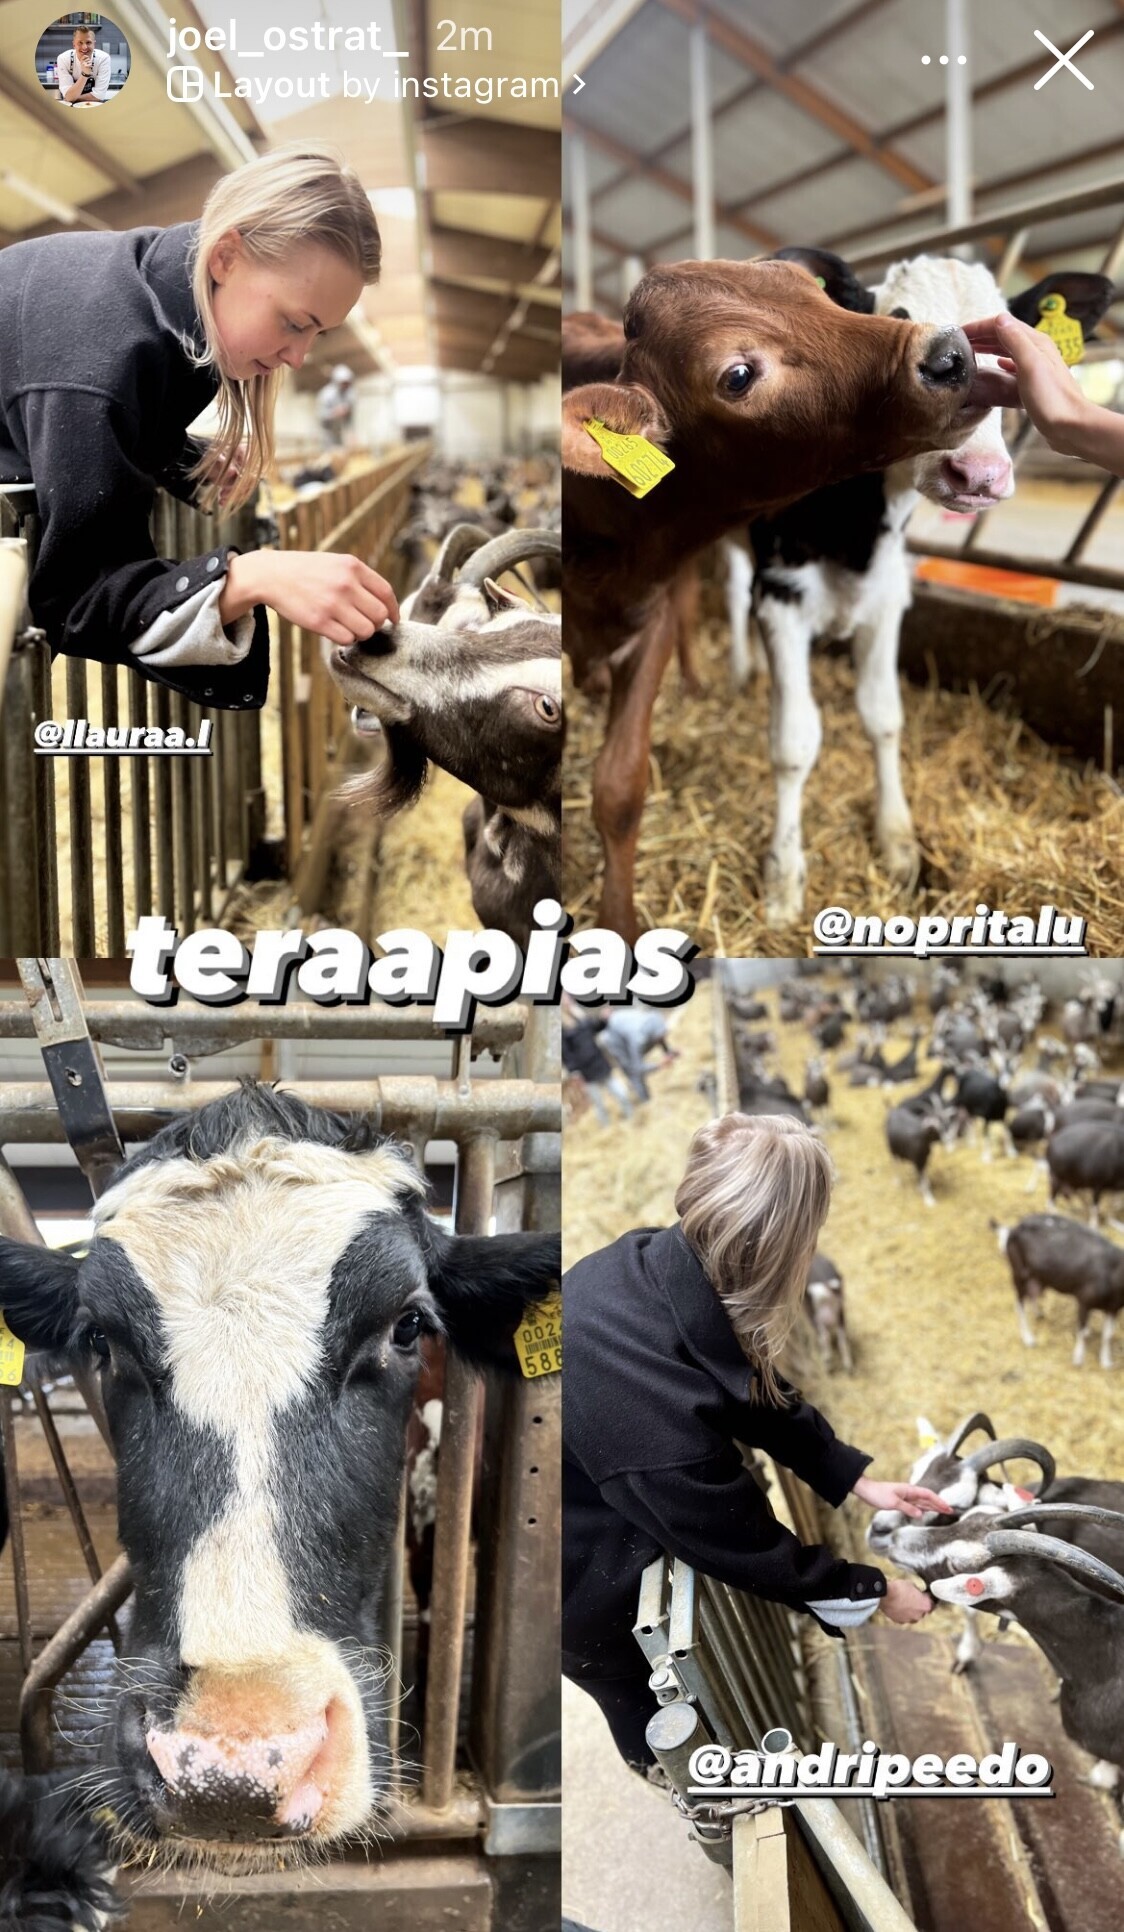 Joel Ostrat käis kallimaga Nopri talu lehmasid külastamas